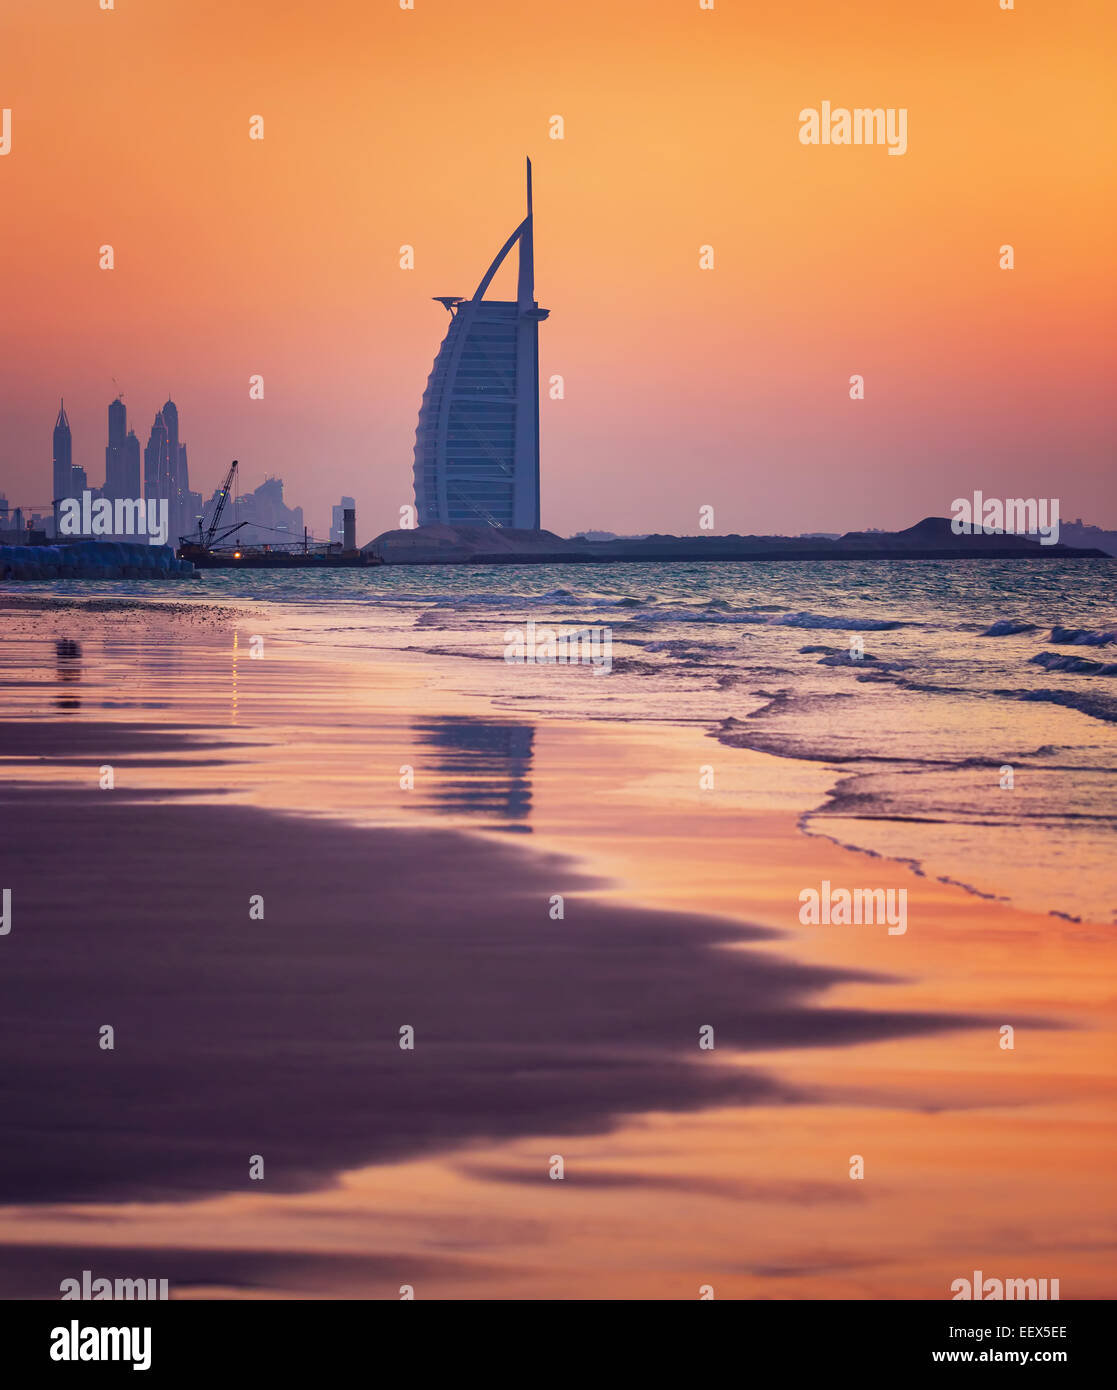 Dubaï, Émirats arabes unis - NOV 24 : Burj Al Arab est 321m, deuxième plus grand hôtel dans le monde, hotel de luxe se trouve sur une île artificielle Banque D'Images